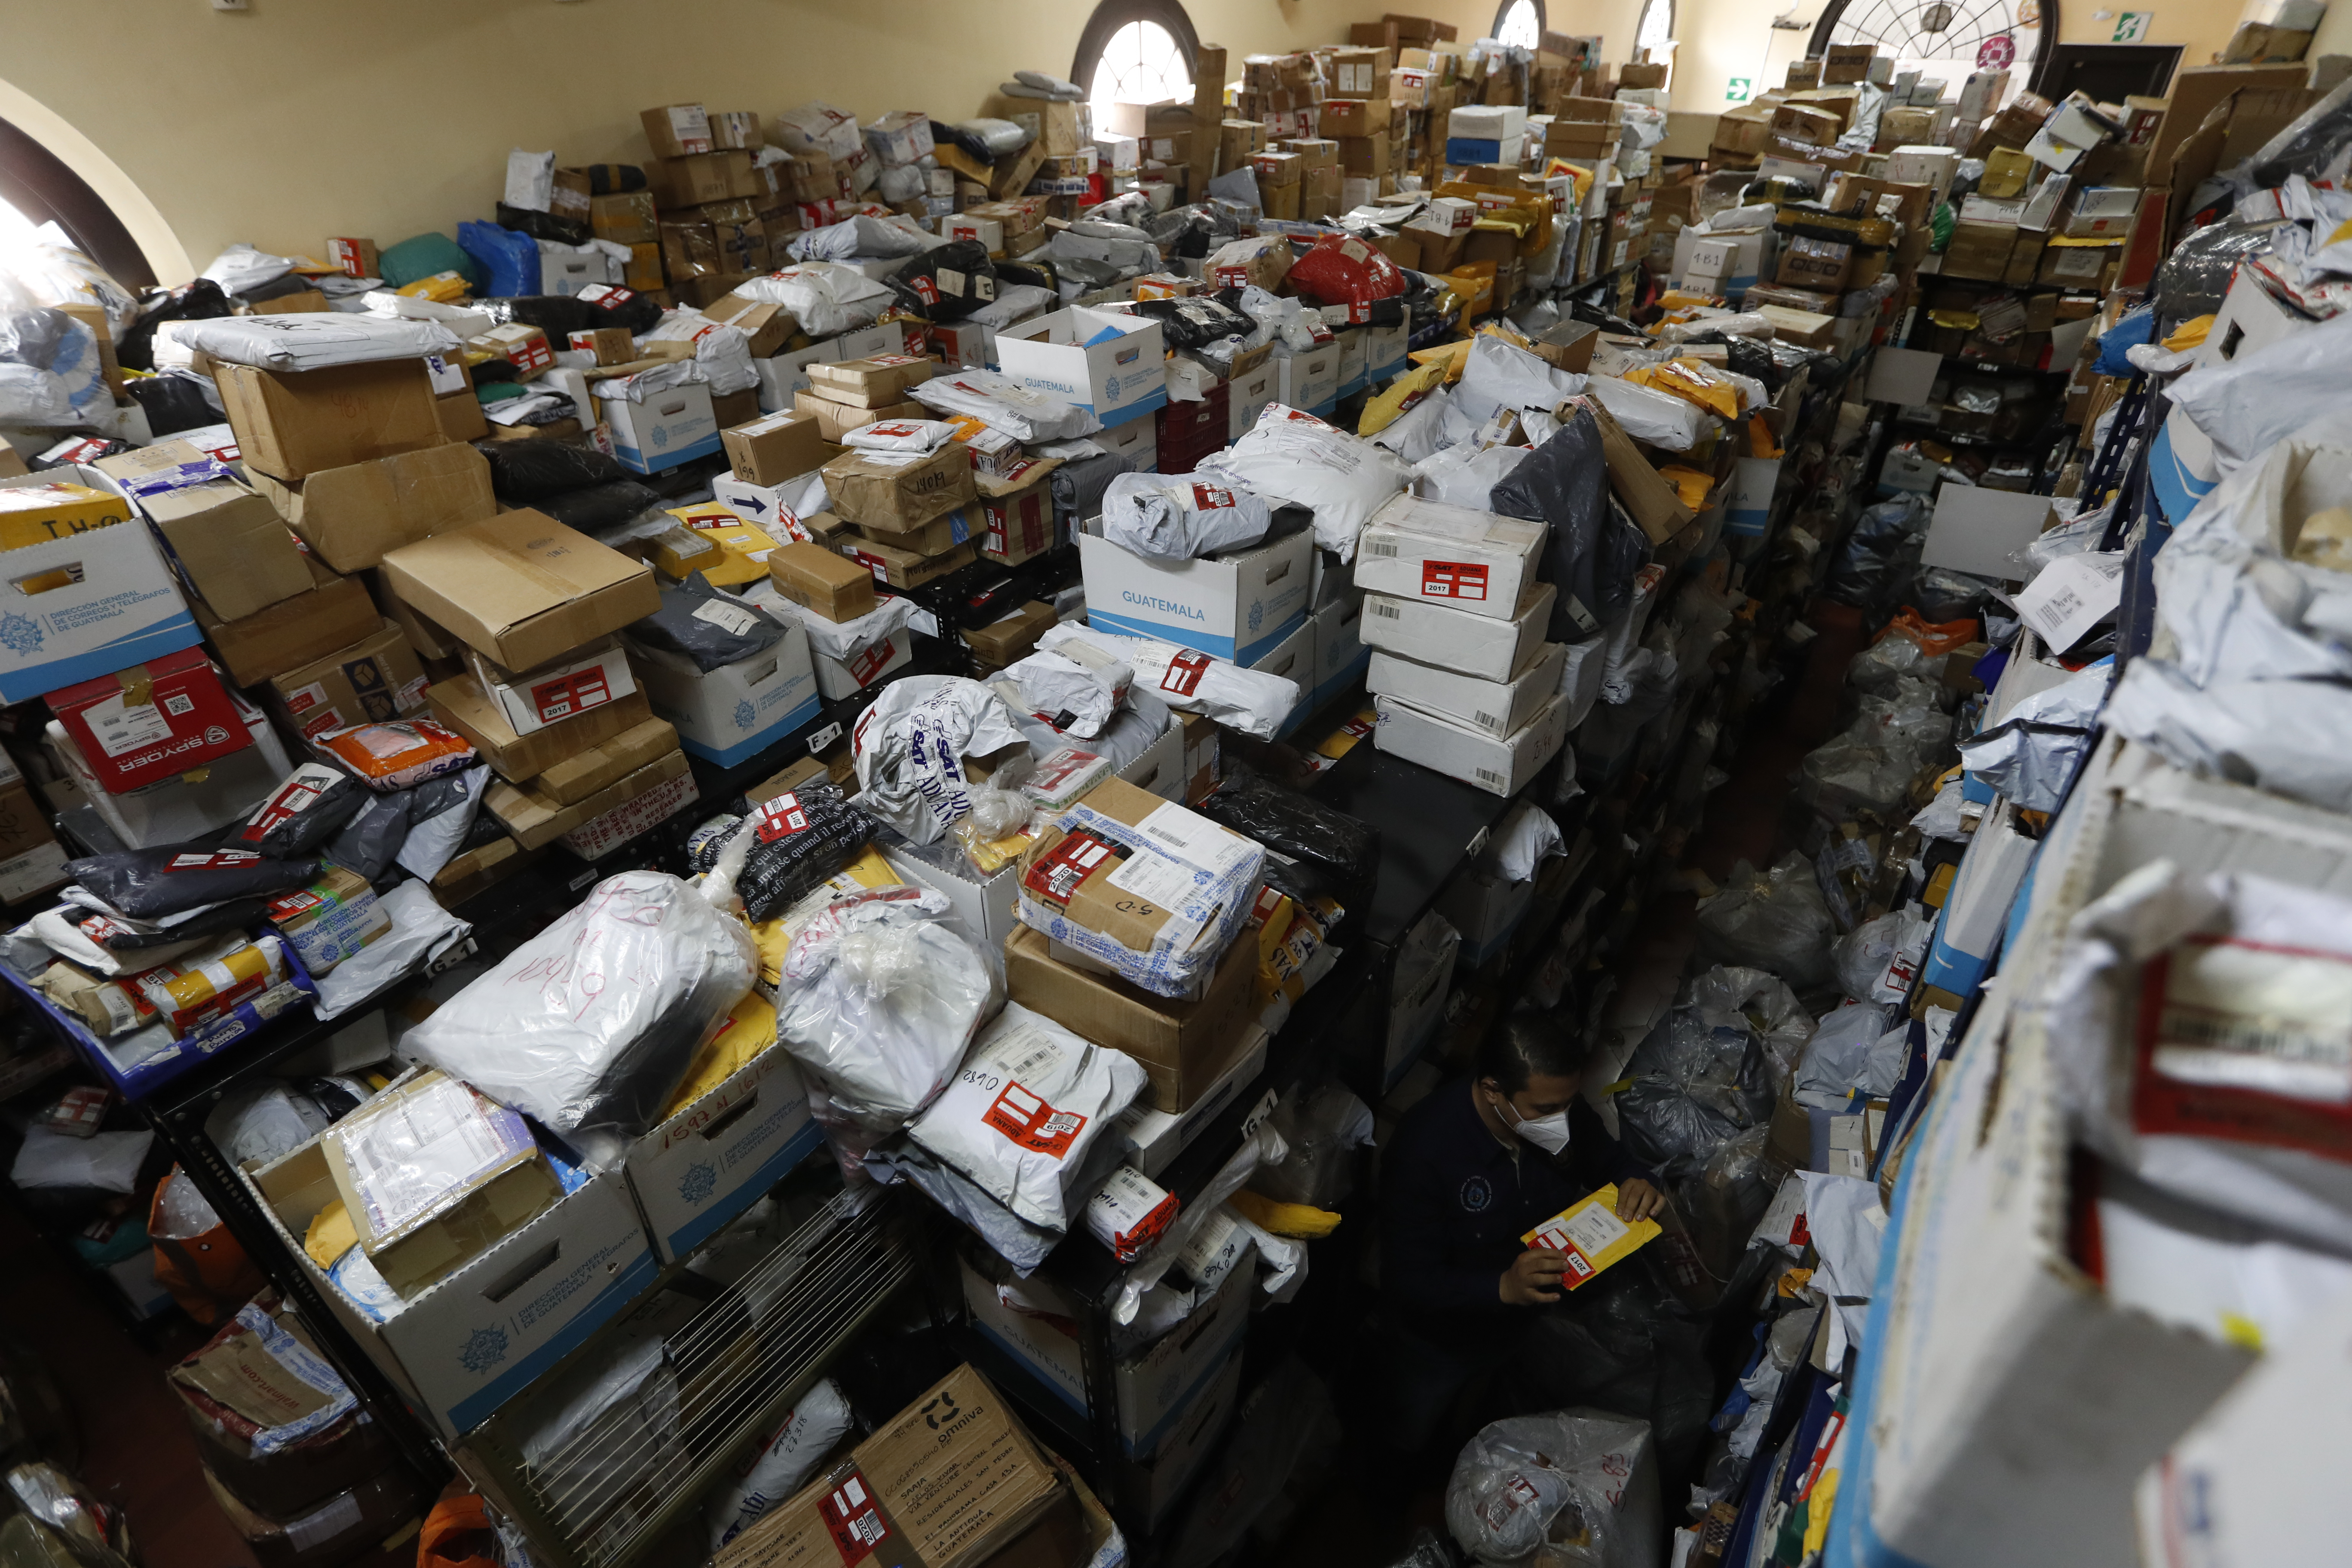 Solo la Aduana de Fardos Postales tiene 27 mil paquetes retenidos, según la oficina de Correos. (Foto Prensa Libre: Esbin García)